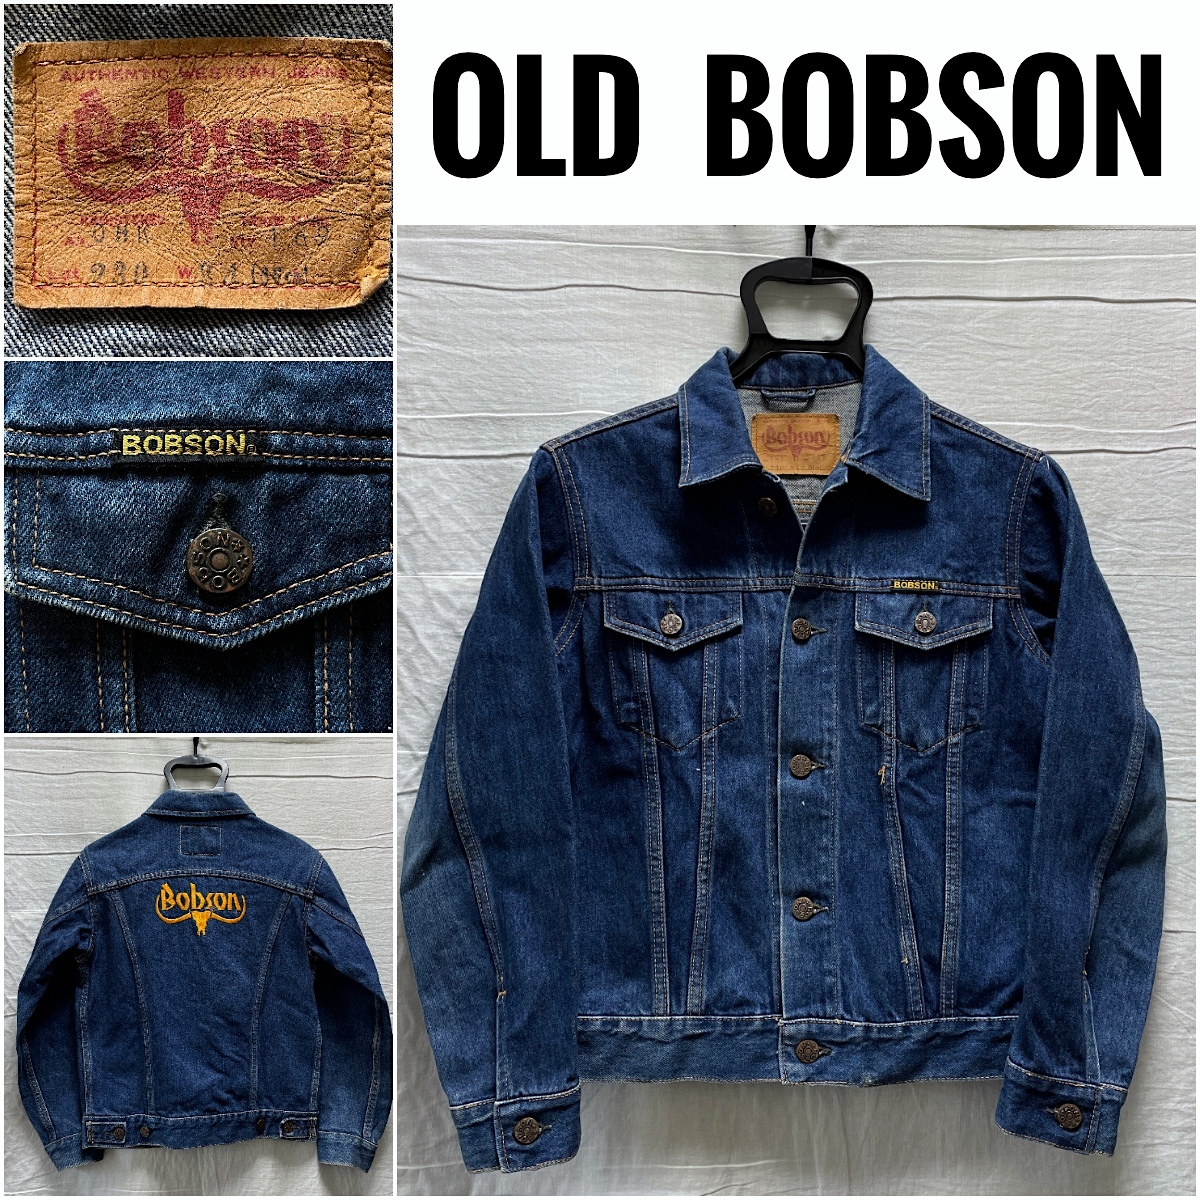 OLD BOBSON Denim Jacket сделано в Японии Vintage Bobson Denim жакет 34 Lot 230 спина . с вышитым логотипом местного производства Vintage Showa 